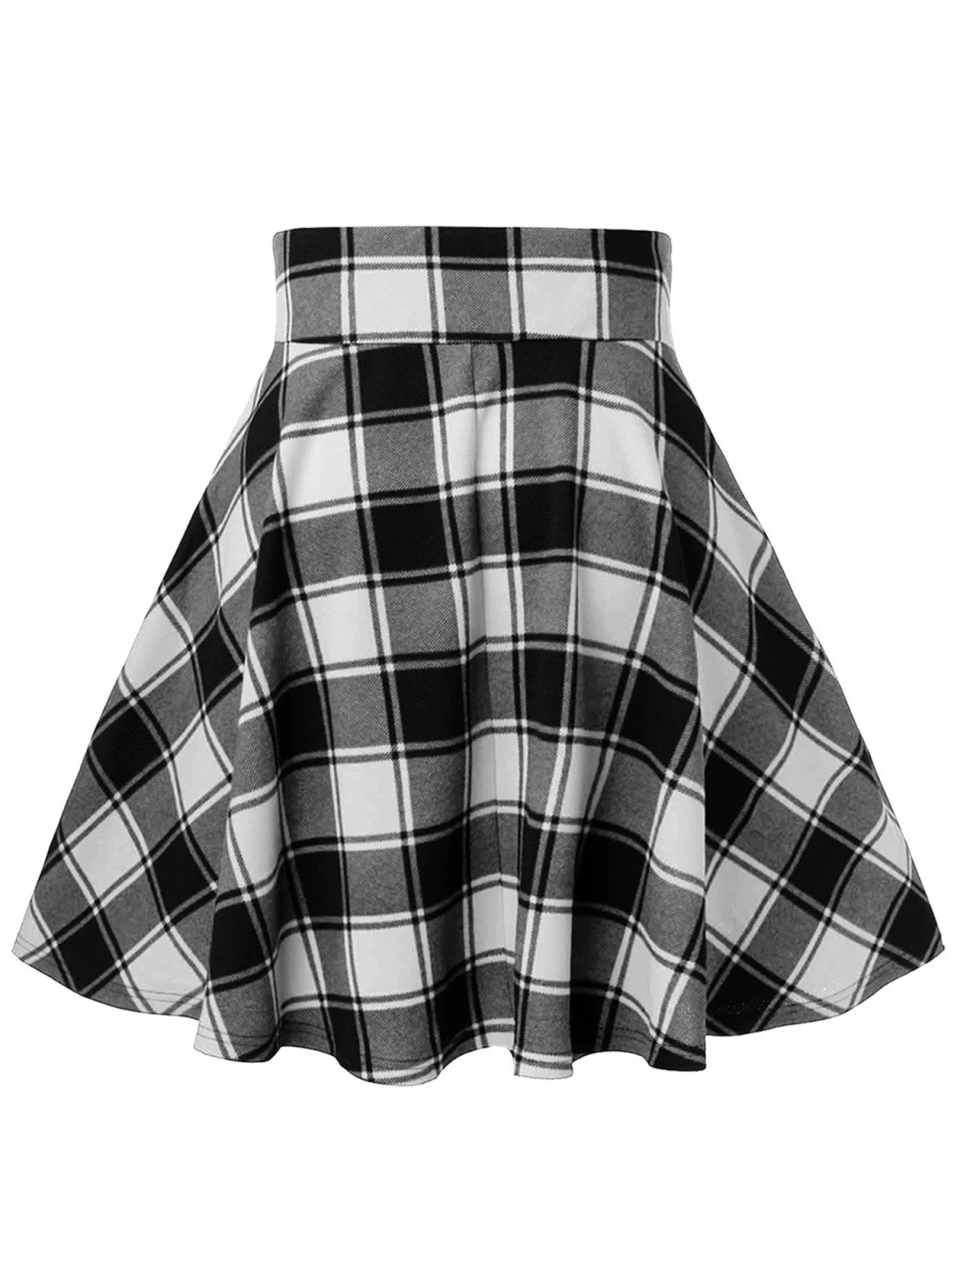 Ladies Casual Fashion A-Type Plaid Print Skirt